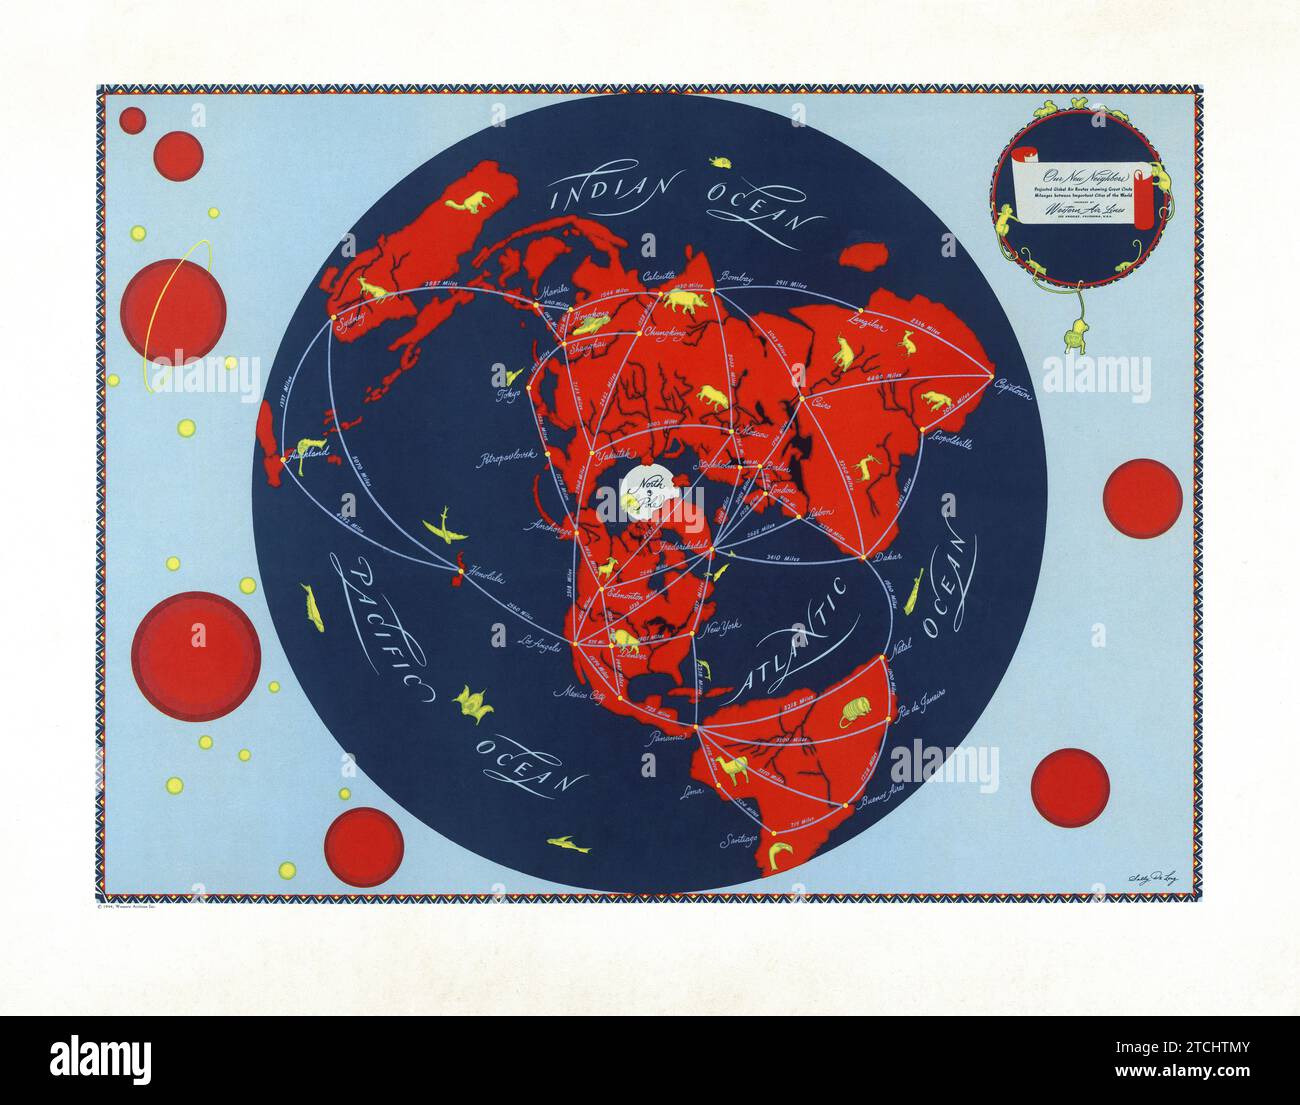 Vintage-amerikanisches Reiseposter - farbige Poster der Western Airlines Karte der Welt von Sally de Long. Die Karte zeigt die projizierten Flugstrecken der Mitte des 20. Jahrhunderts Stockfoto